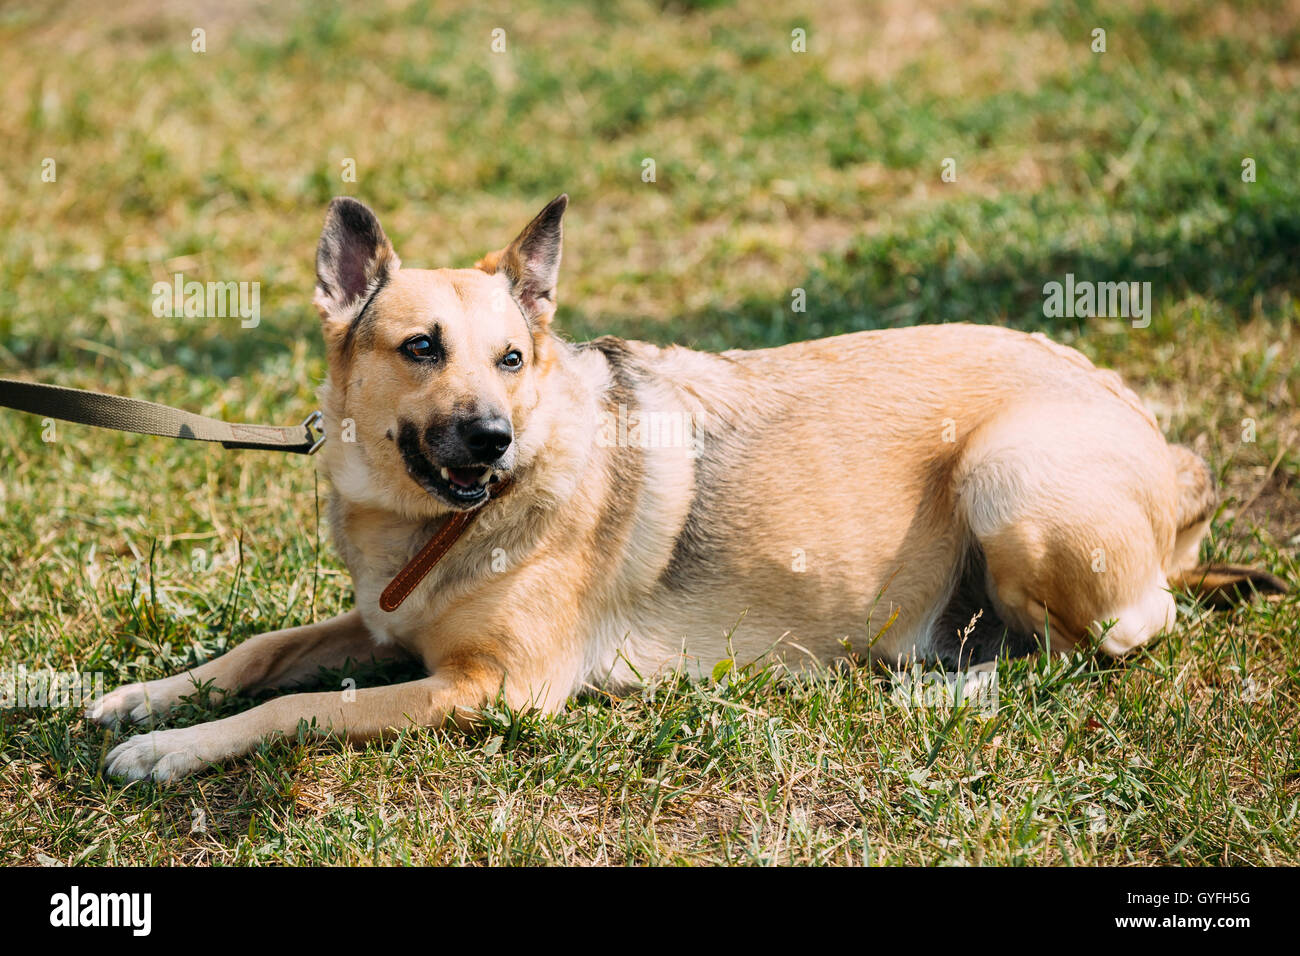 Di medie dimensioni Mongrel razza mista giallo Short-Haired femmina adulta dog sitter su rifilato prato soleggiato. Foto Stock